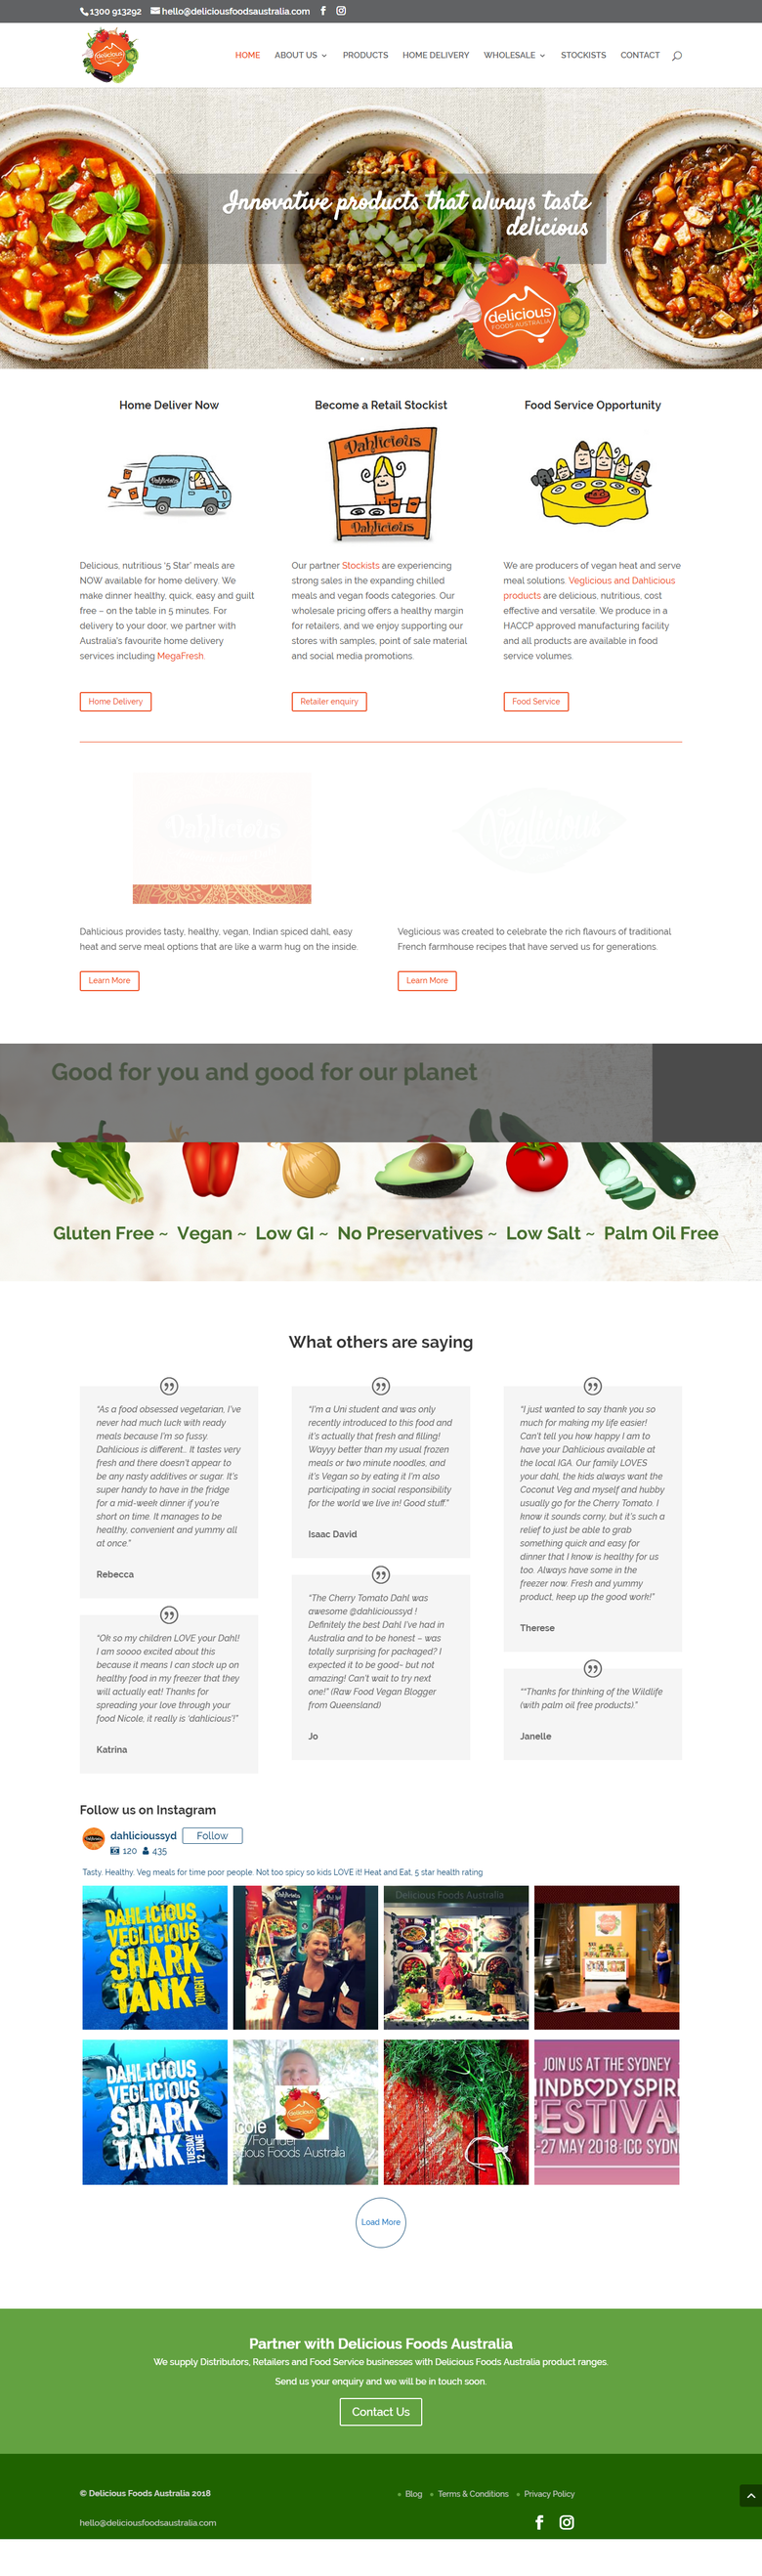 Website design for Delicious foods Austrailia